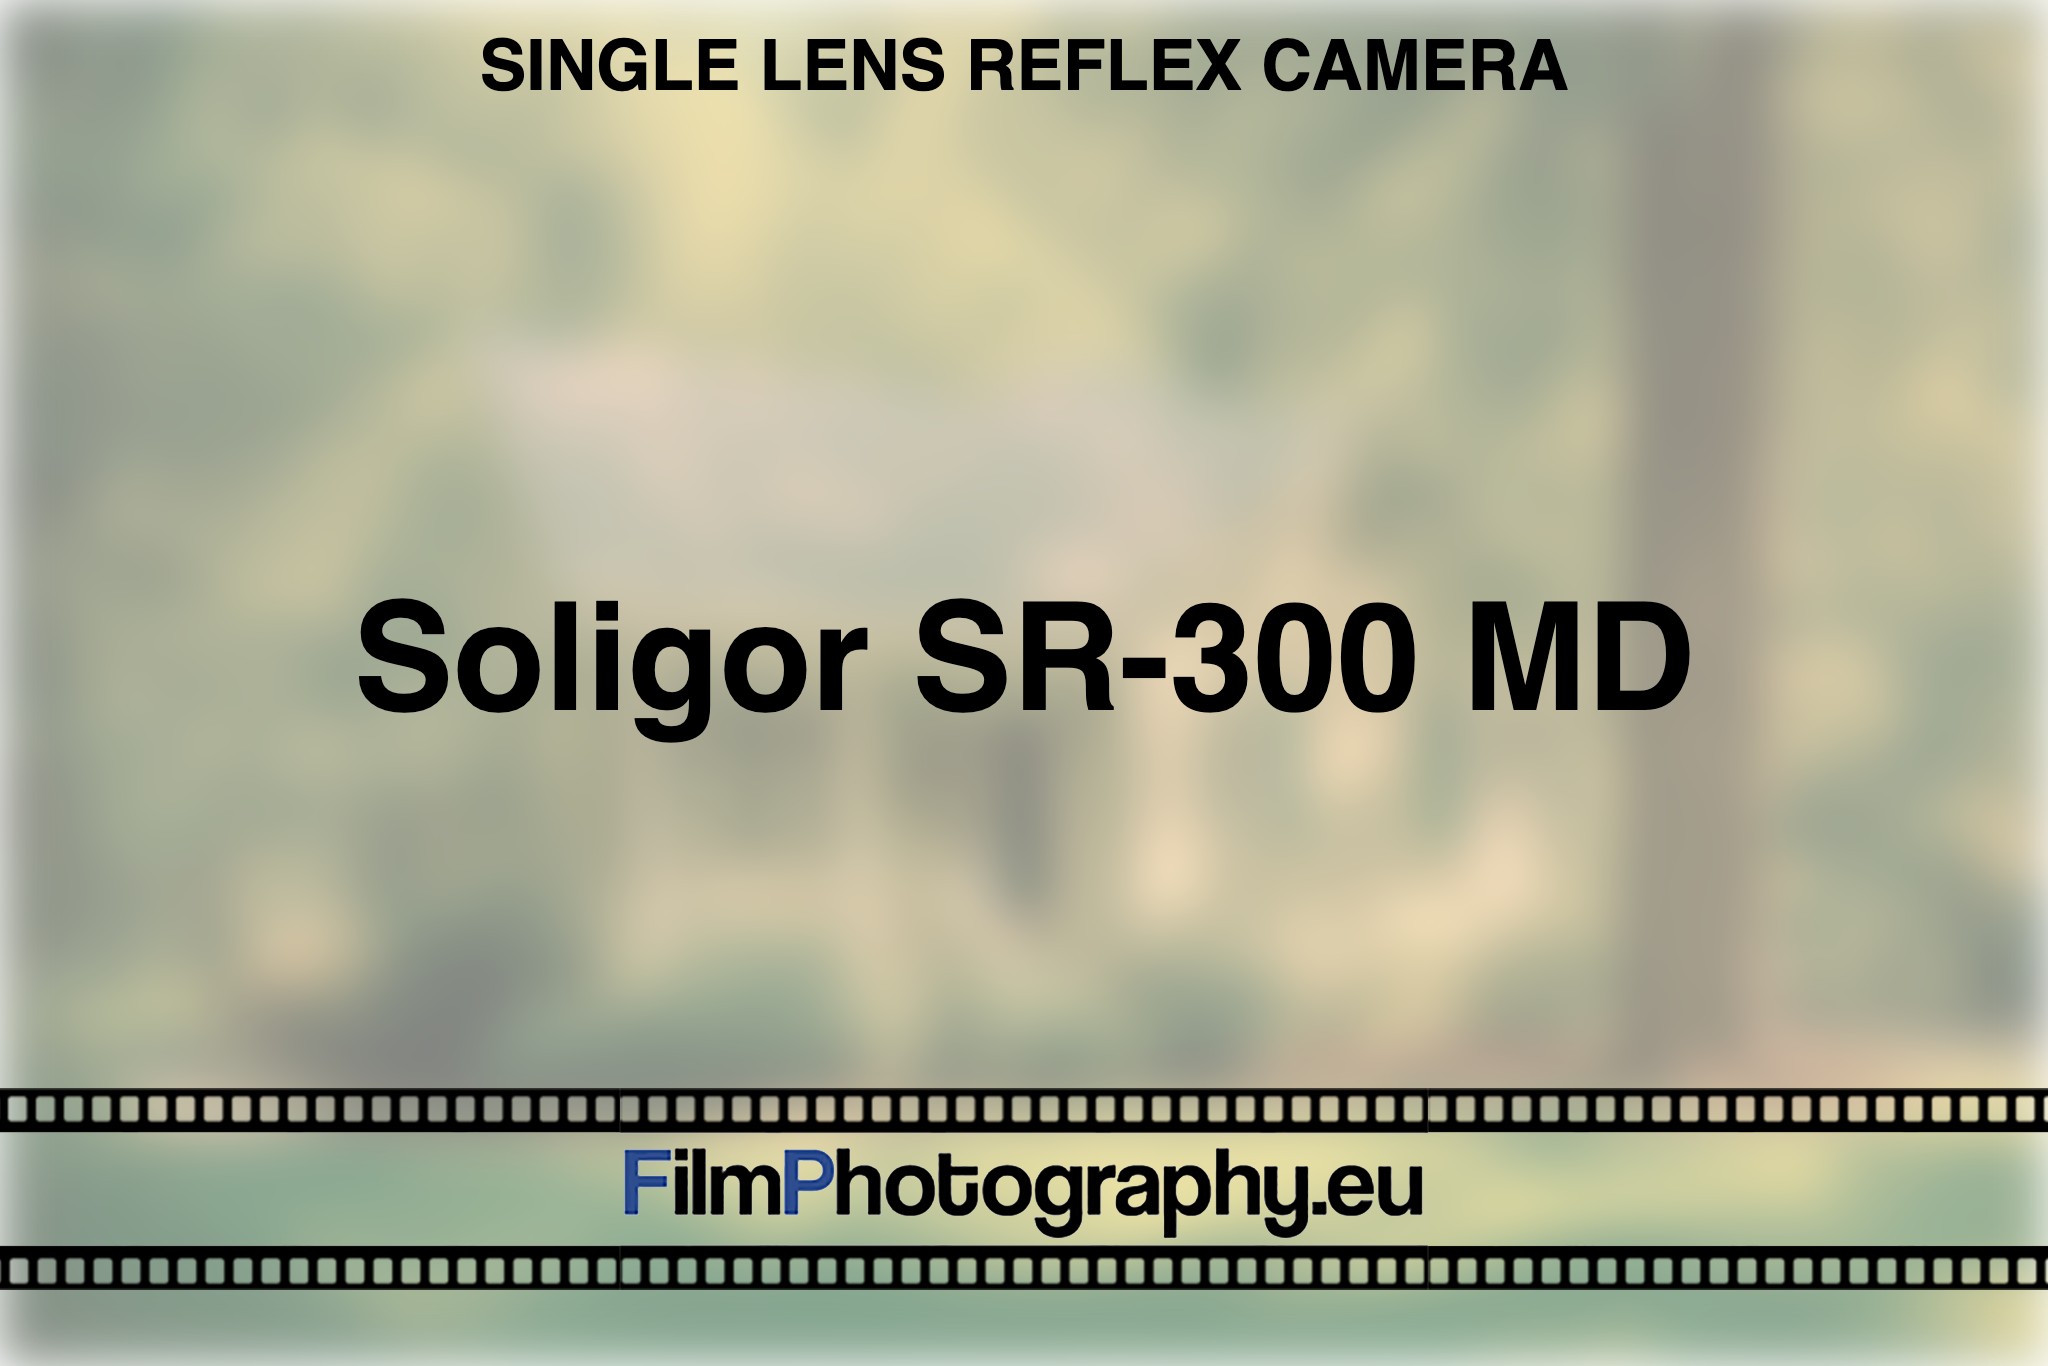 soligor-sr-300-md-single-lens-reflex-camera-bnv